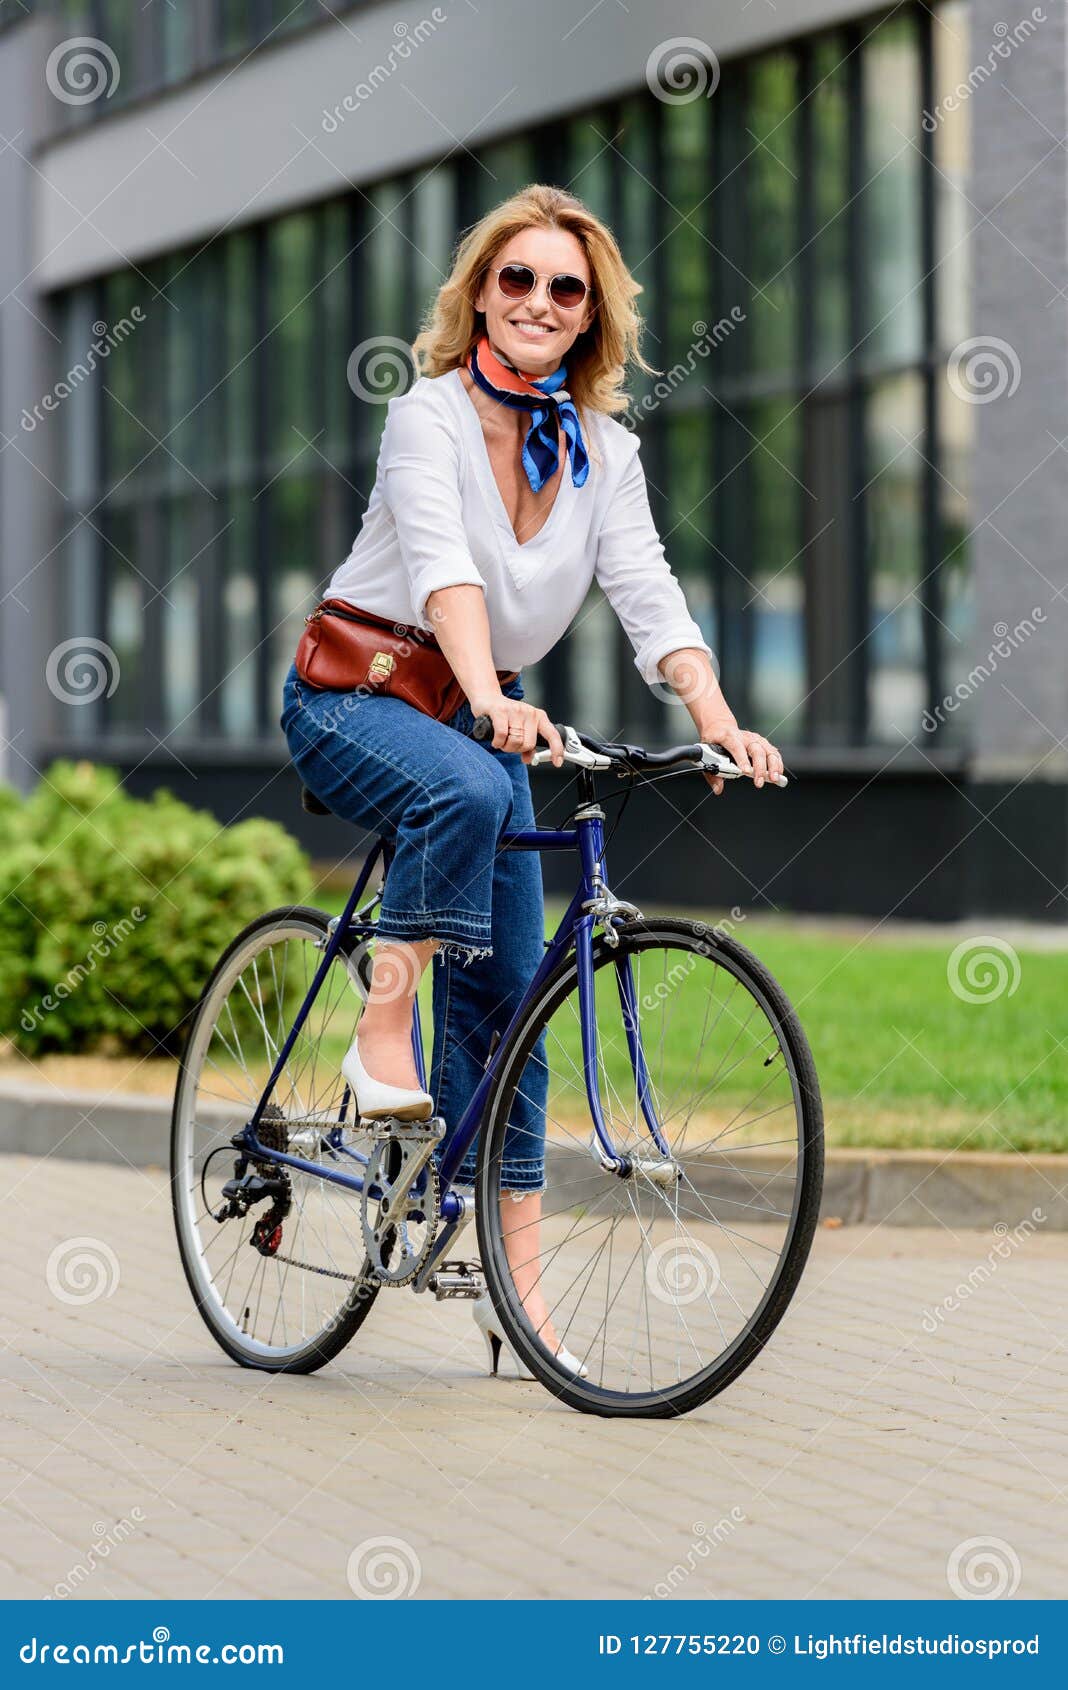 那些骑自行车的美人儿 - 普象网